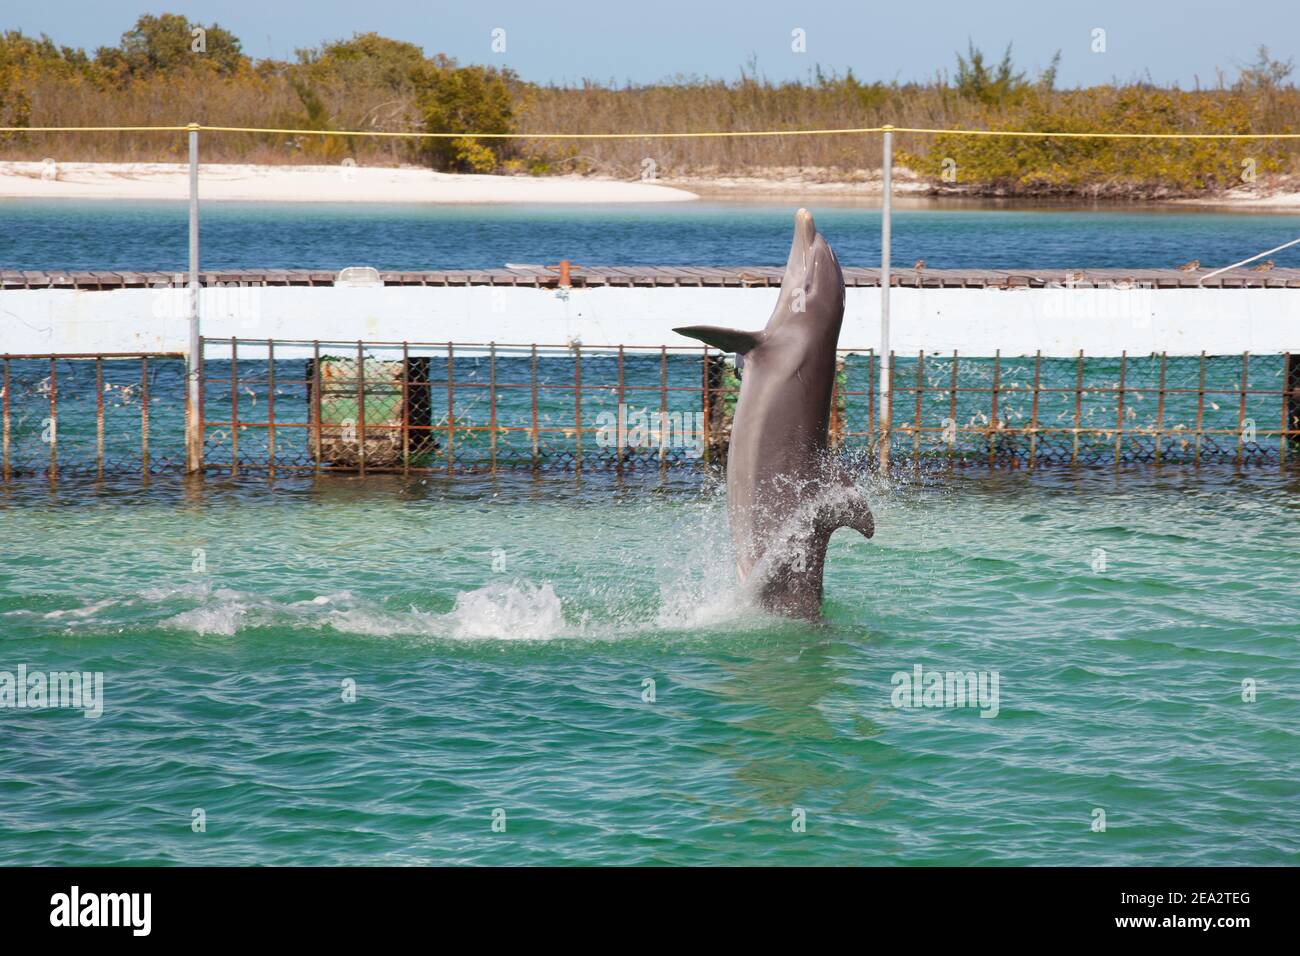 CAYO LARGO, KUBA:EIN Delfin steht auf dem Wasser in einem kleinen Pool auf der Insel Cayo Largo. Stockfoto